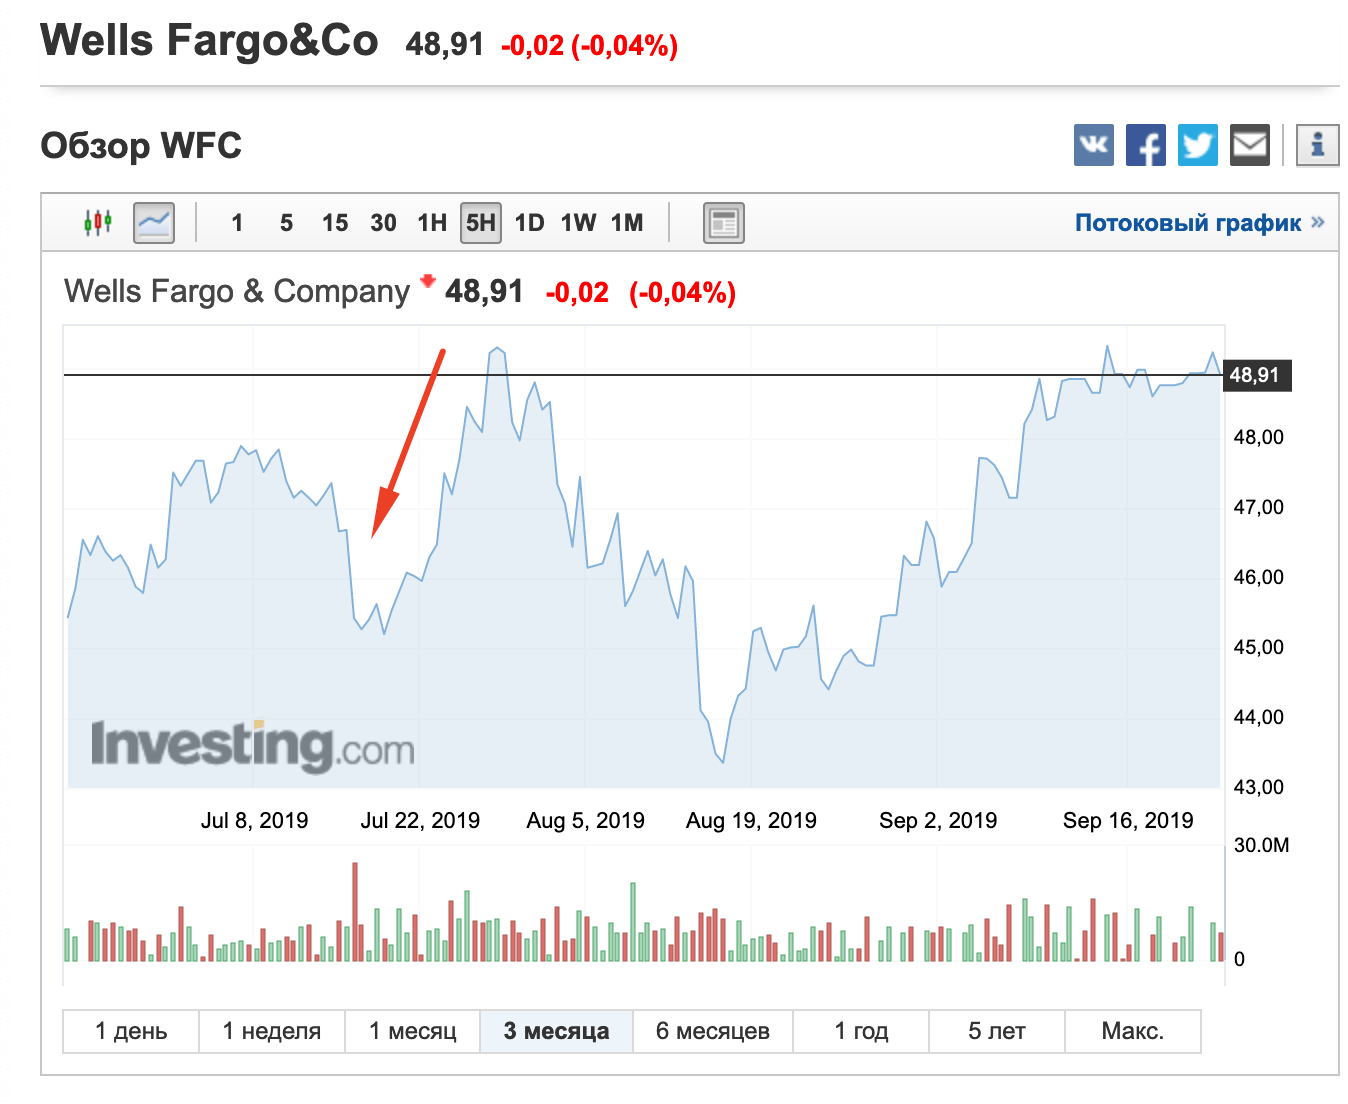 альт-подпись: После запрета акции Wells Fargo упали в цене, но впоследствии рынок развернулся.